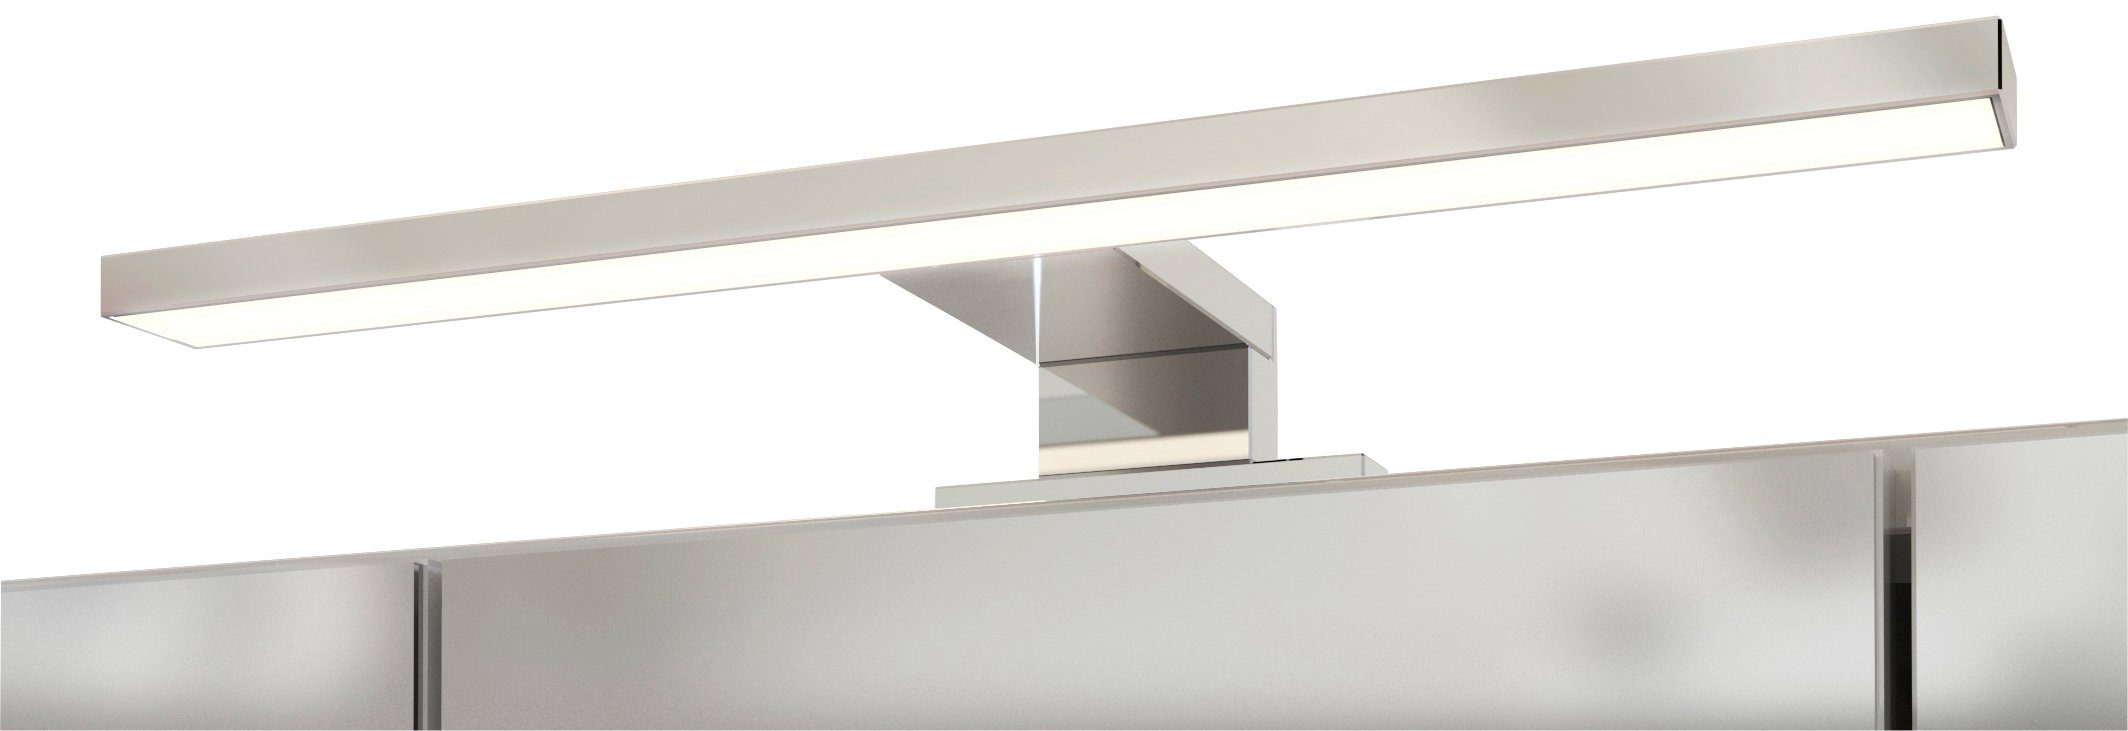 HELD MÖBEL Spiegelschrank Inklusive LED-Beleuchtung Livorno weiß/weiß | weiß